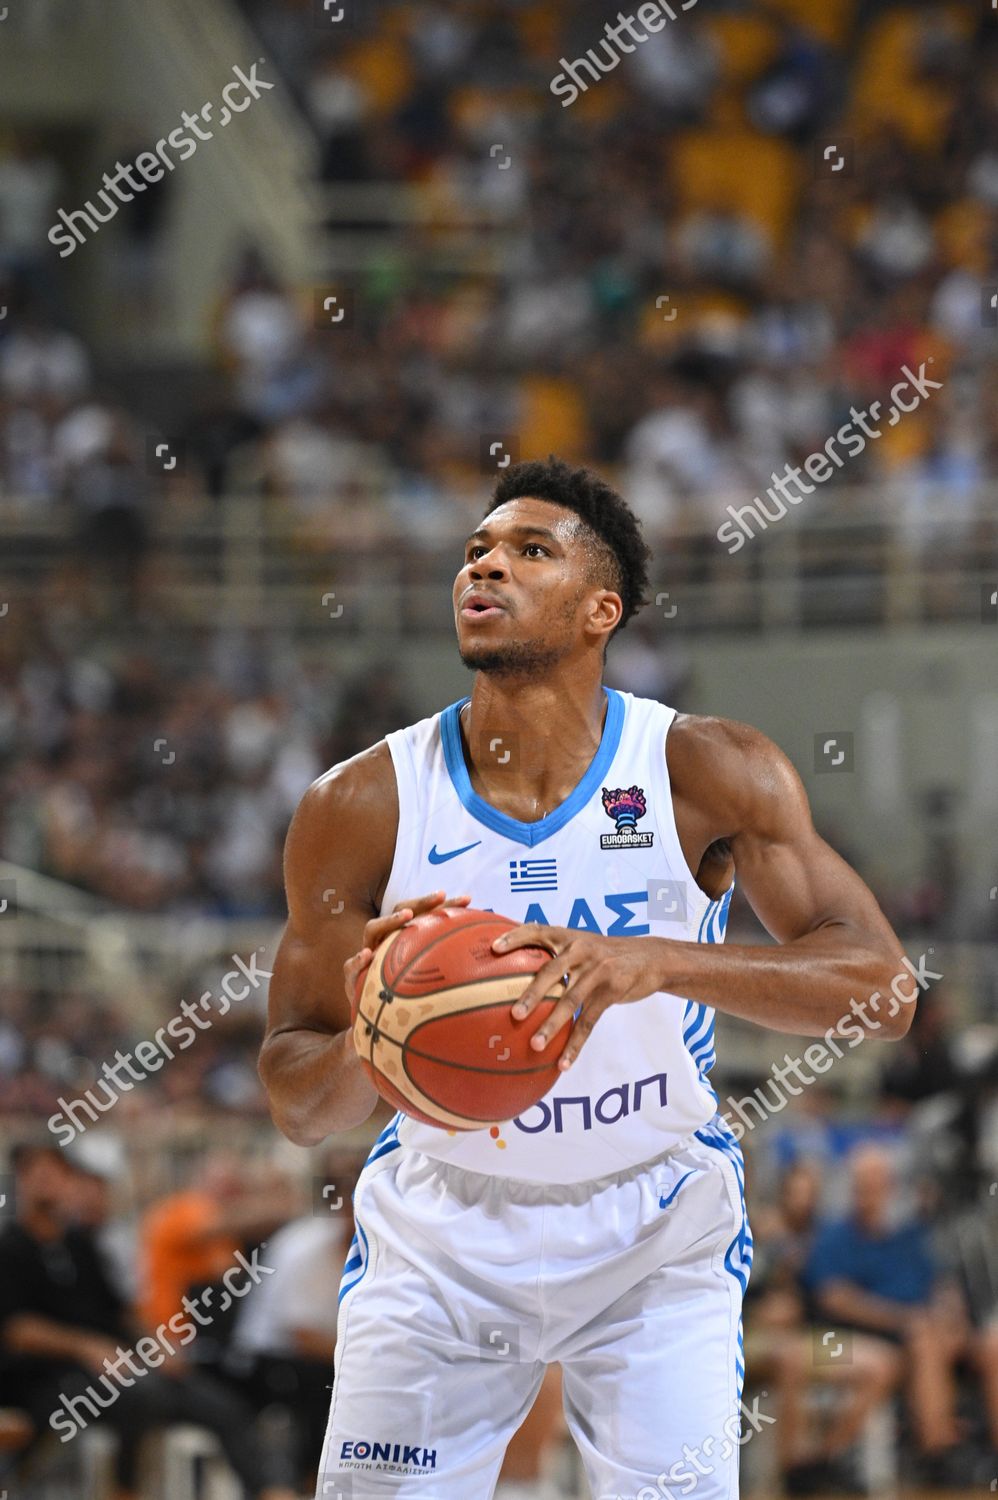 Giannis Antetokounmpo to play for Greece at Eurobasket